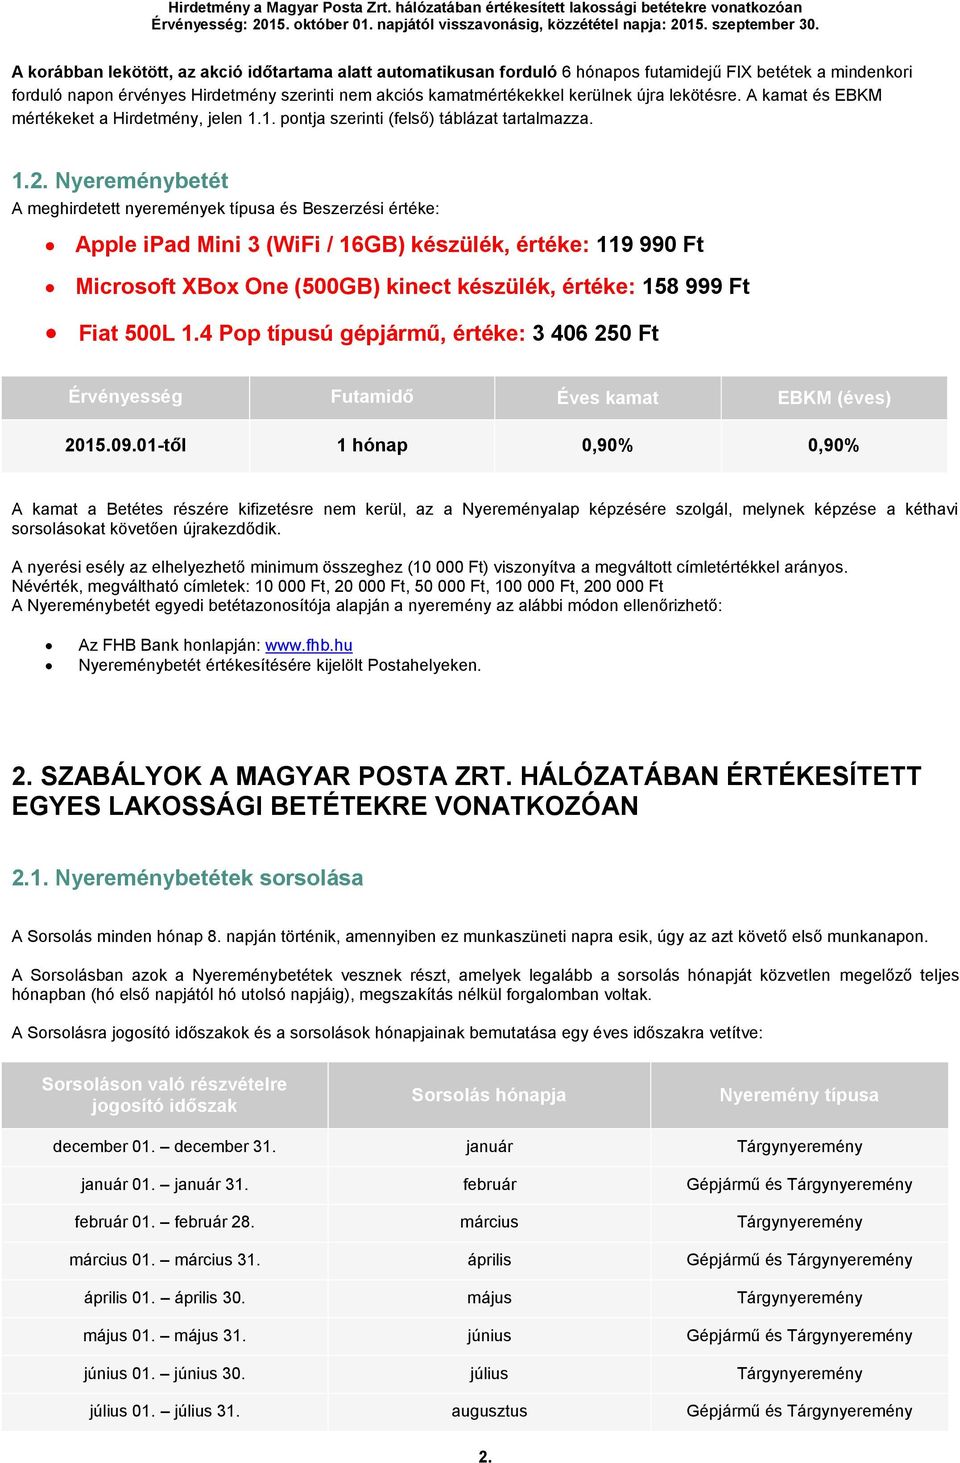 A Magyar Posta Zrt. hálózatában értékesített lakossági betétekre  vonatkozóan. - PDF Ingyenes letöltés